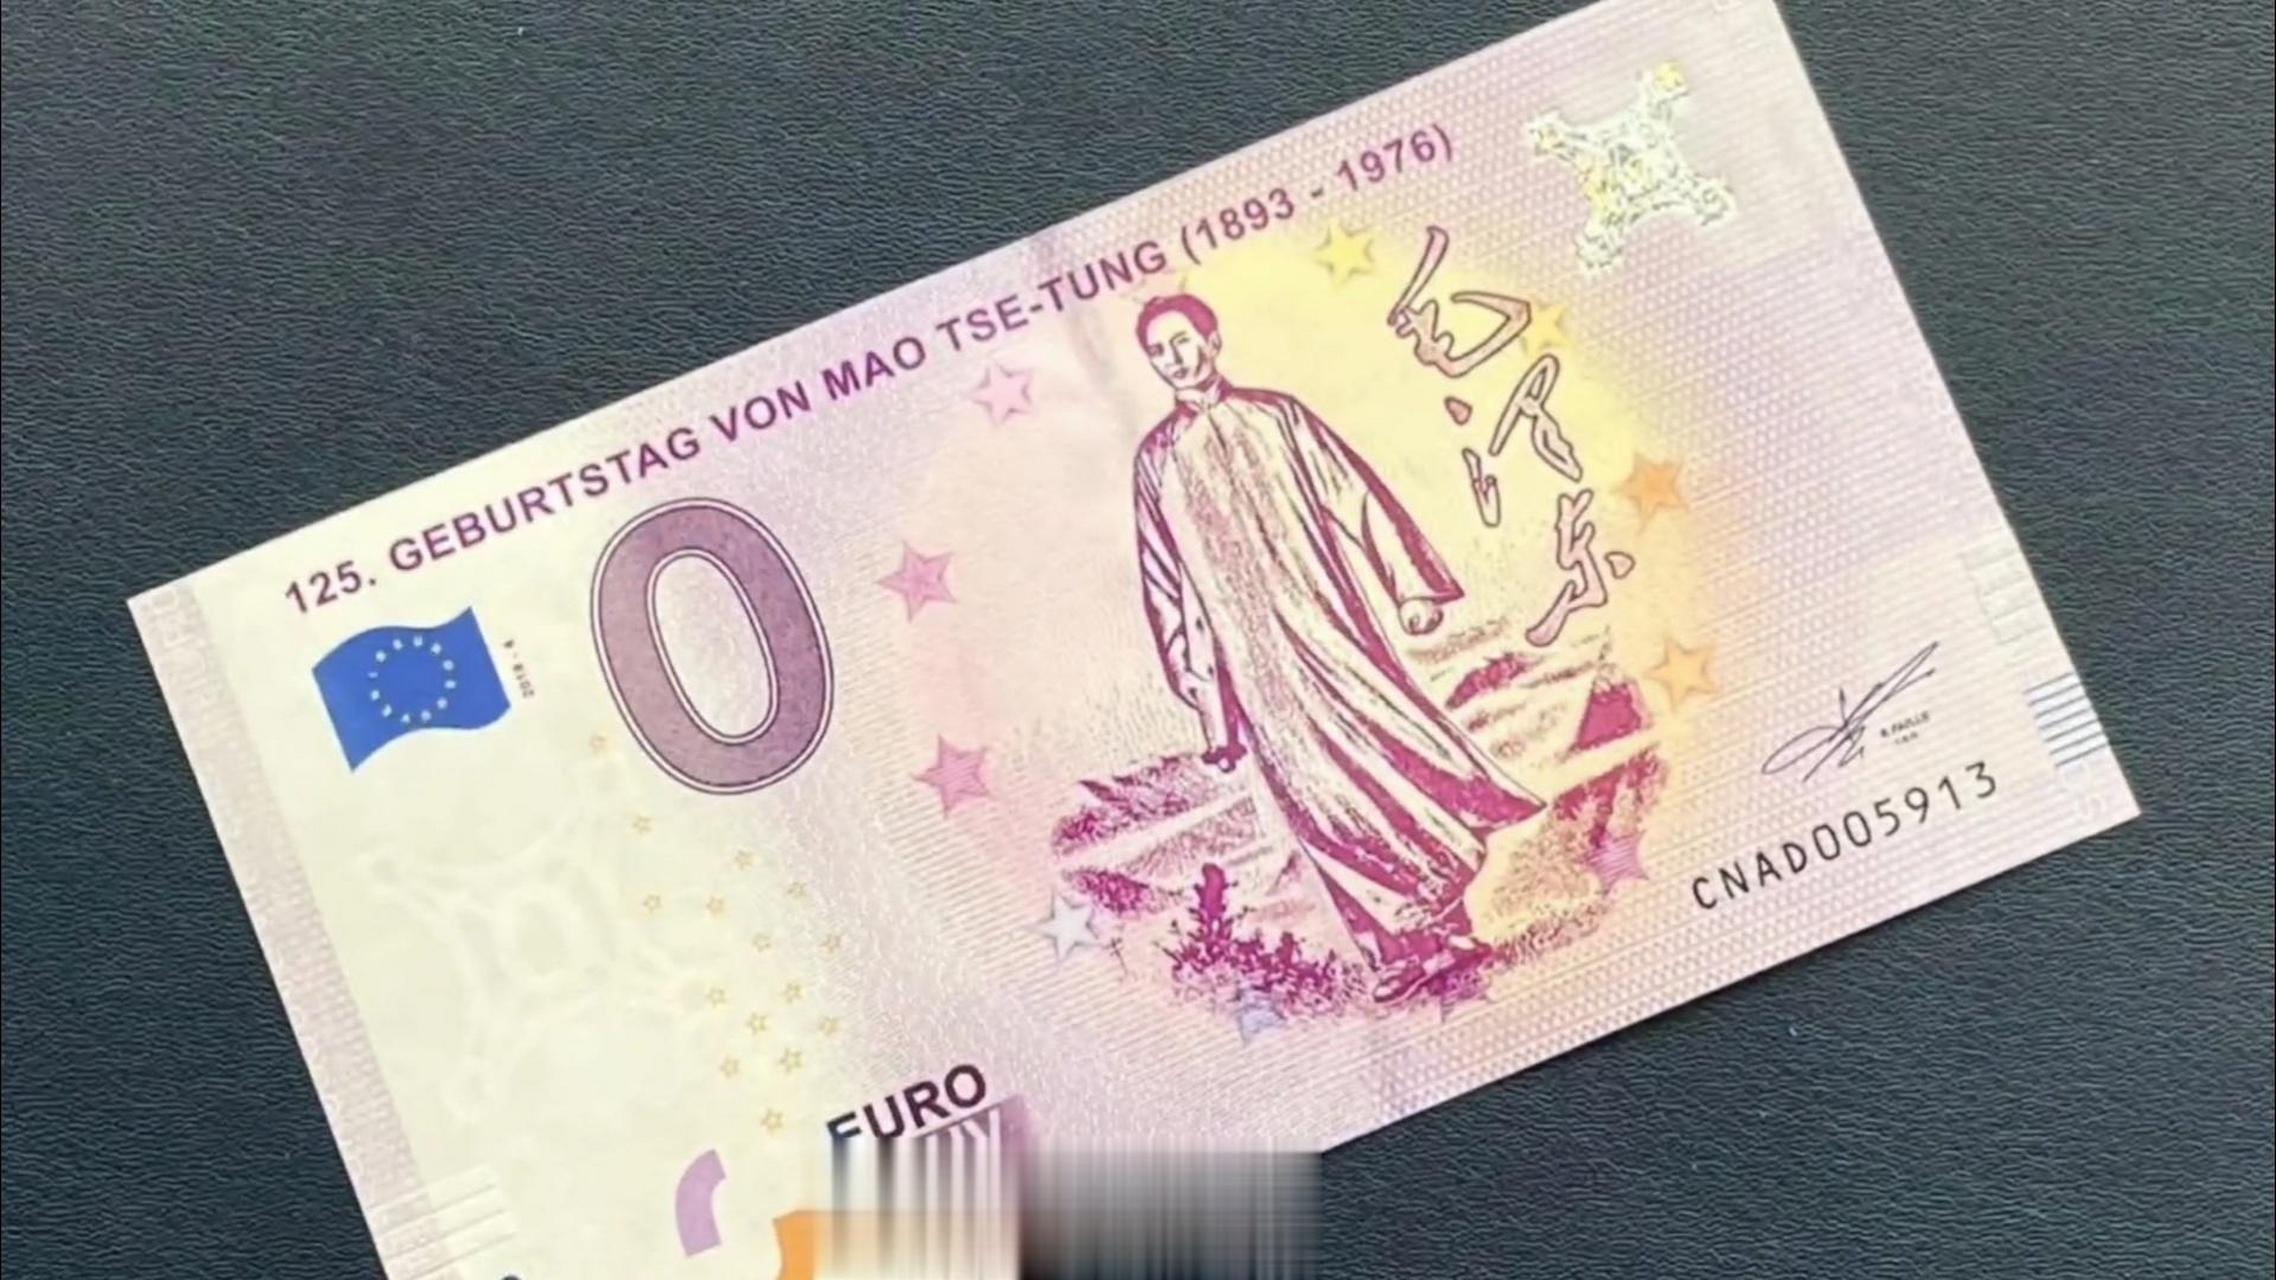 0元欧元纪念钞,纪念伟大导师125周年诞辰